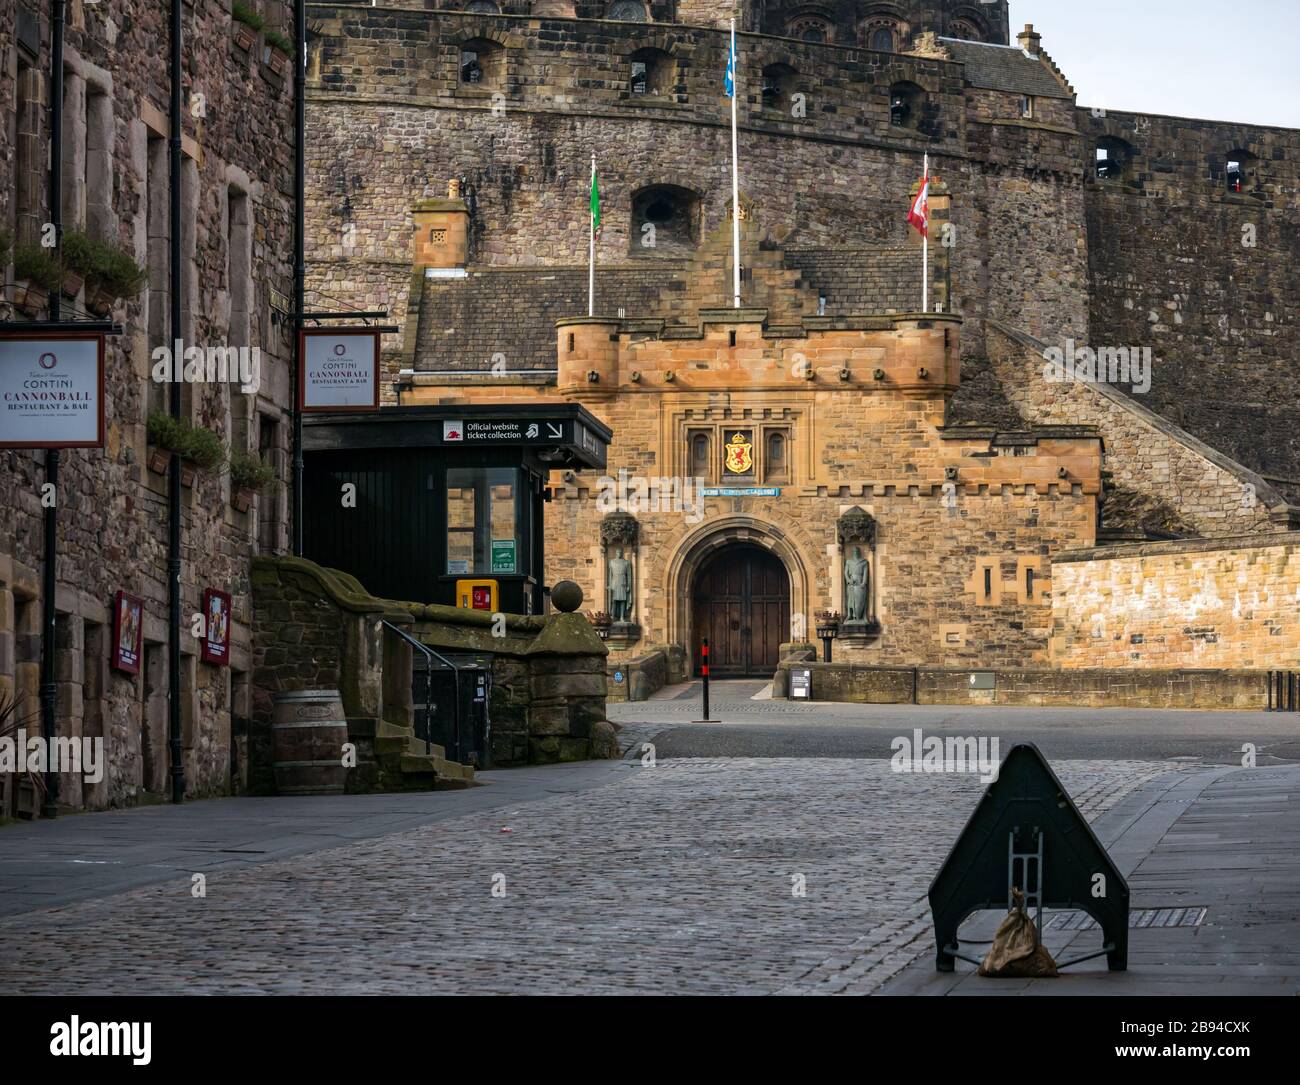 Déserté sans touristes dans le château fermé d'Edimbourg pendant la pandémie de Coronovirus Covid-19, Edimbourg, Ecosse, Royaume-Uni Banque D'Images